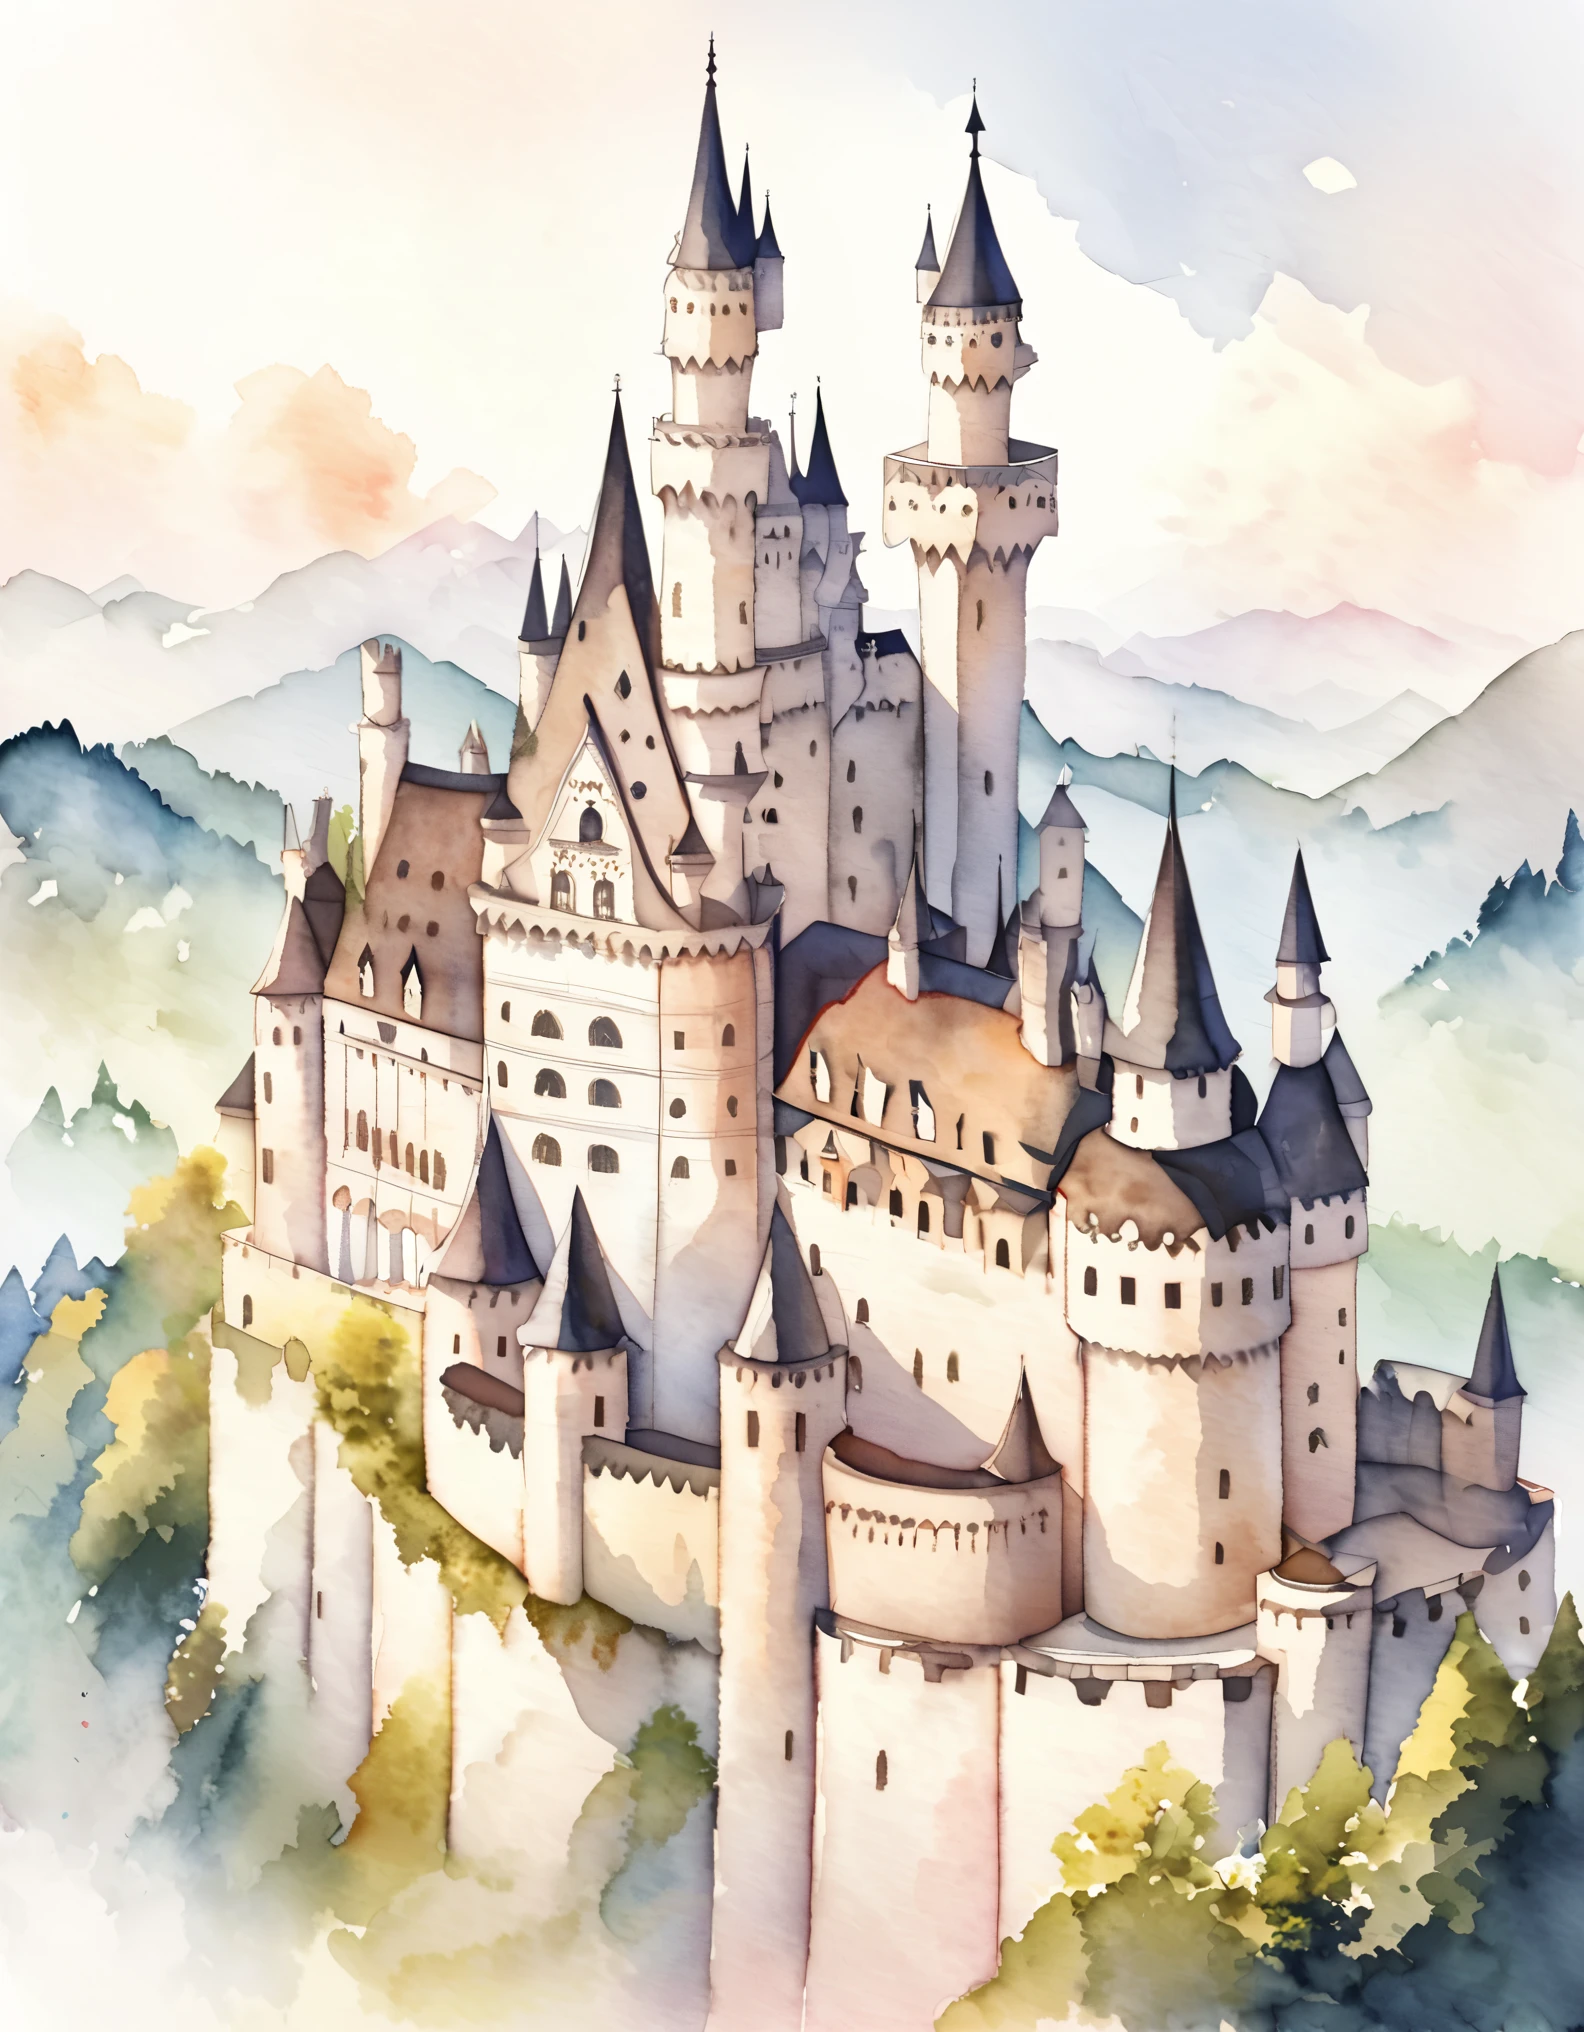 ノイシュヴァンシュタイン城, 外壁は白い石灰岩で覆われたレンガでできている., 叶わぬ夢を追いかける王様のためのロマンチックな城, 美しい城, ドイツの城, 丘の上に建てられた, 水彩:1.2, 気まぐれで繊細な, 子供向けのイラストのように&#39;の本, やさしい筆致, 薄暗い, 淡い色彩が幻想的な雰囲気を醸し出す.